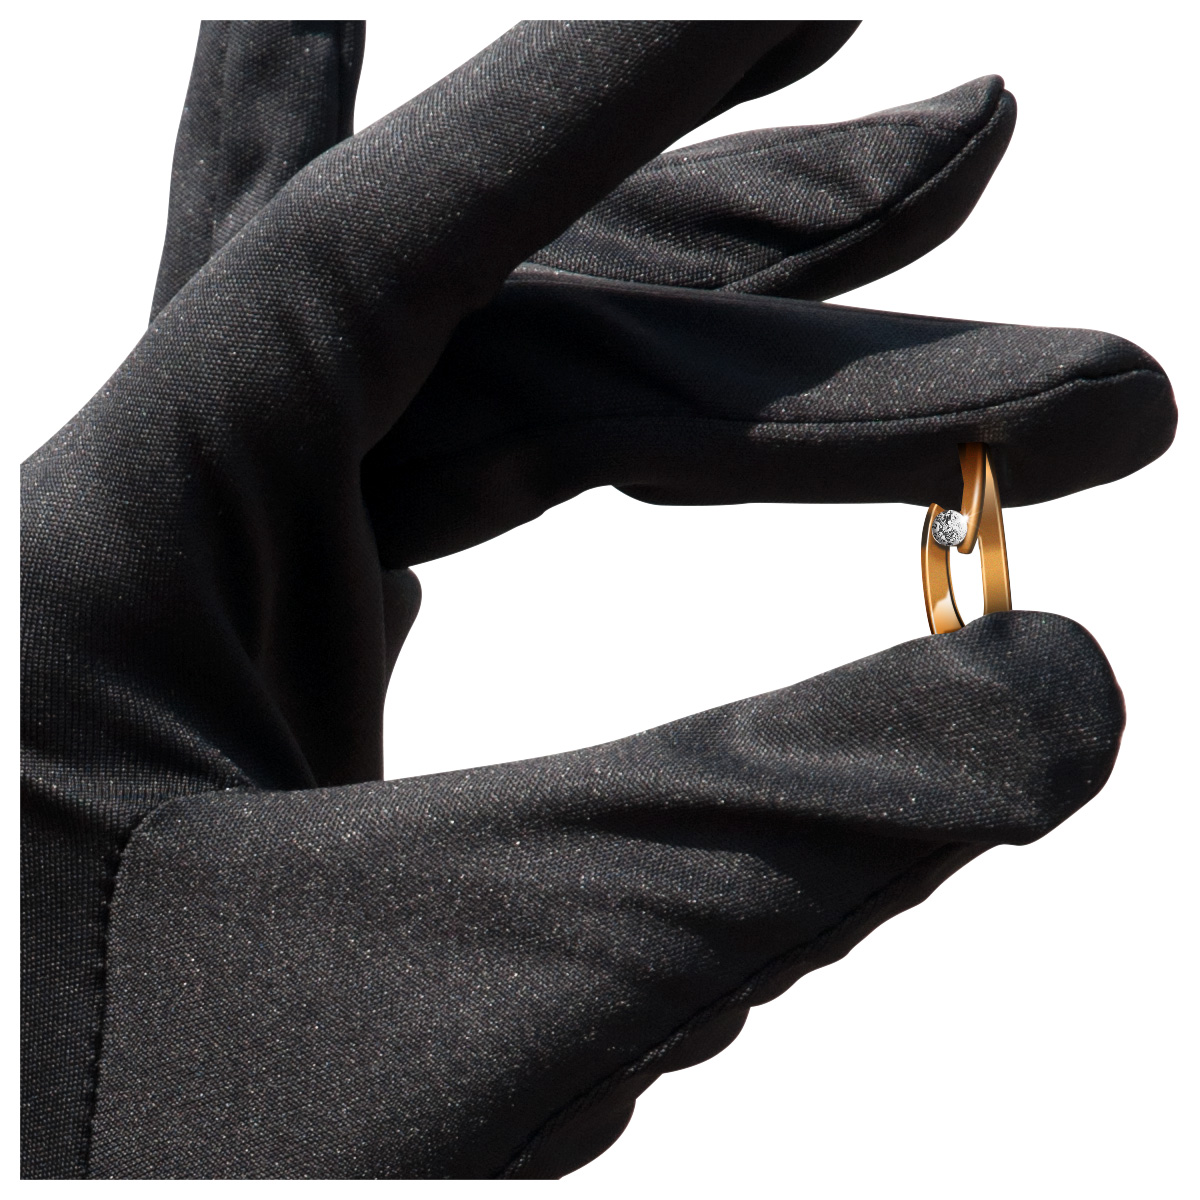 Mikrofaser Handschuh-Paar Haute Couture, schwarz, Größe L
